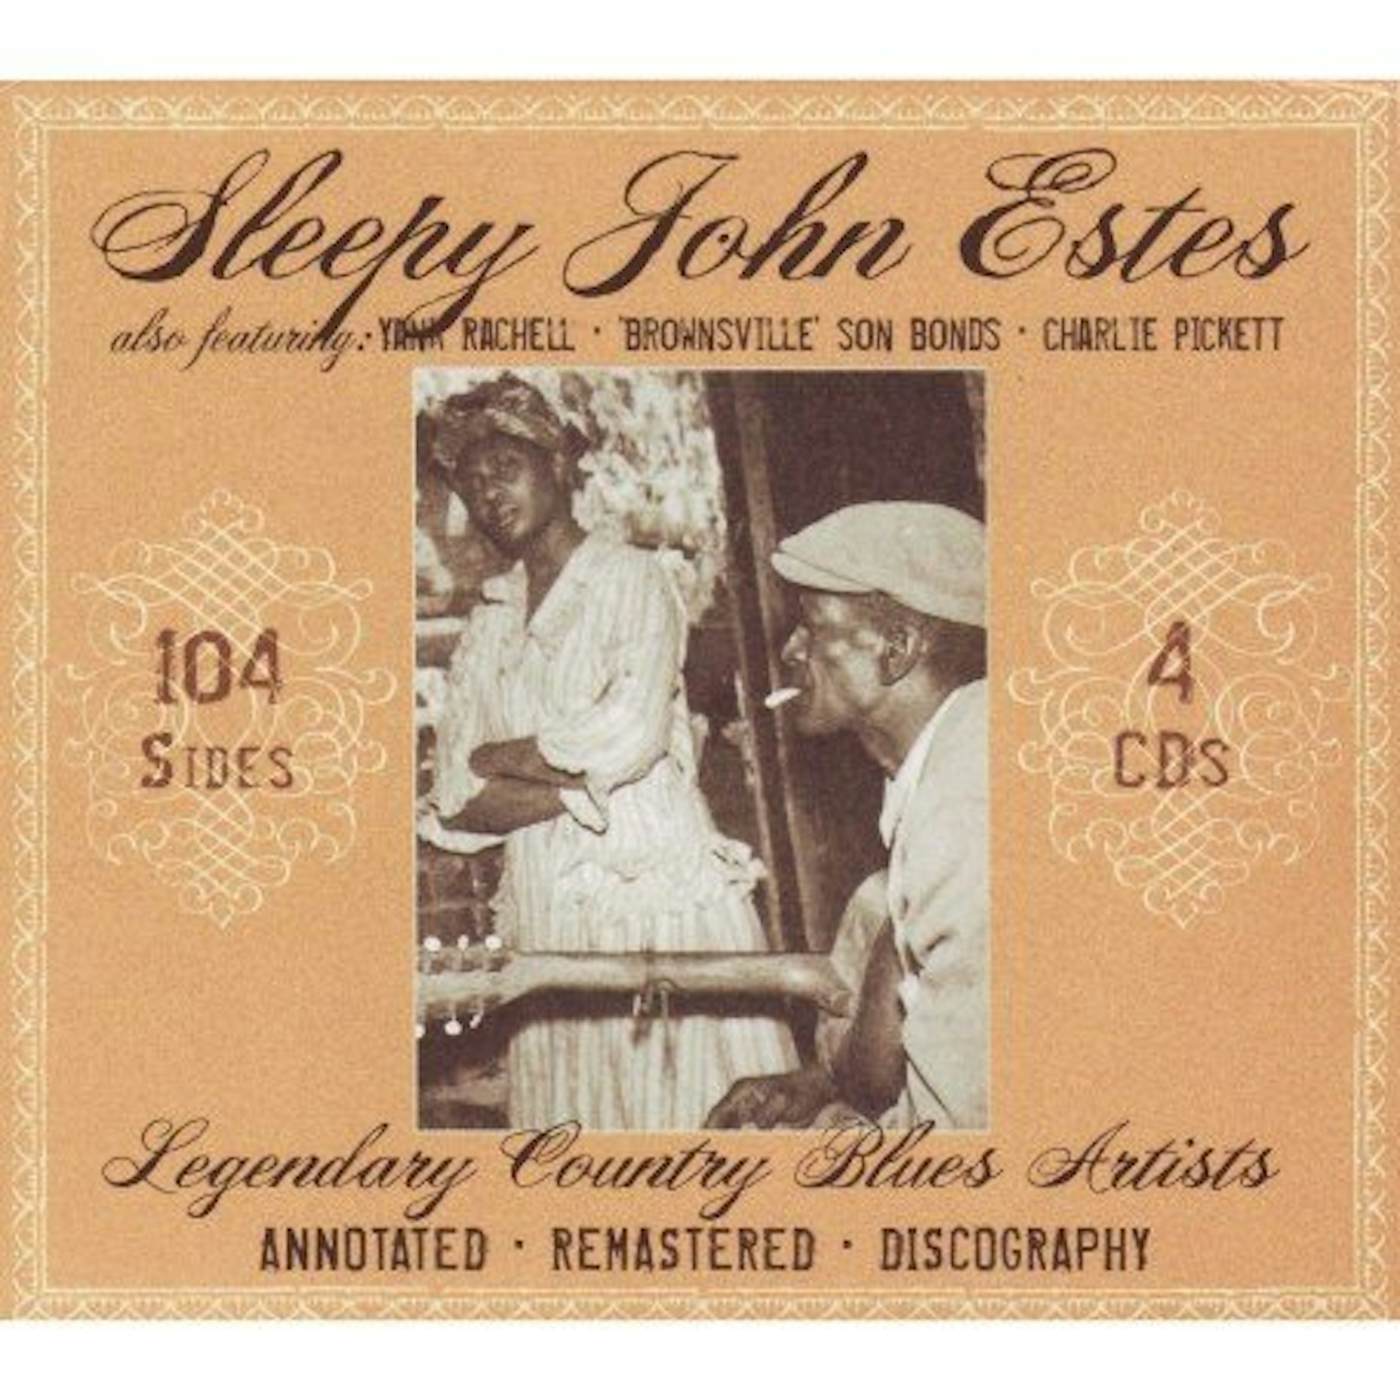 Sleepy John Estes LEGENDARY COUNTRY BLUES ARTISTS CD